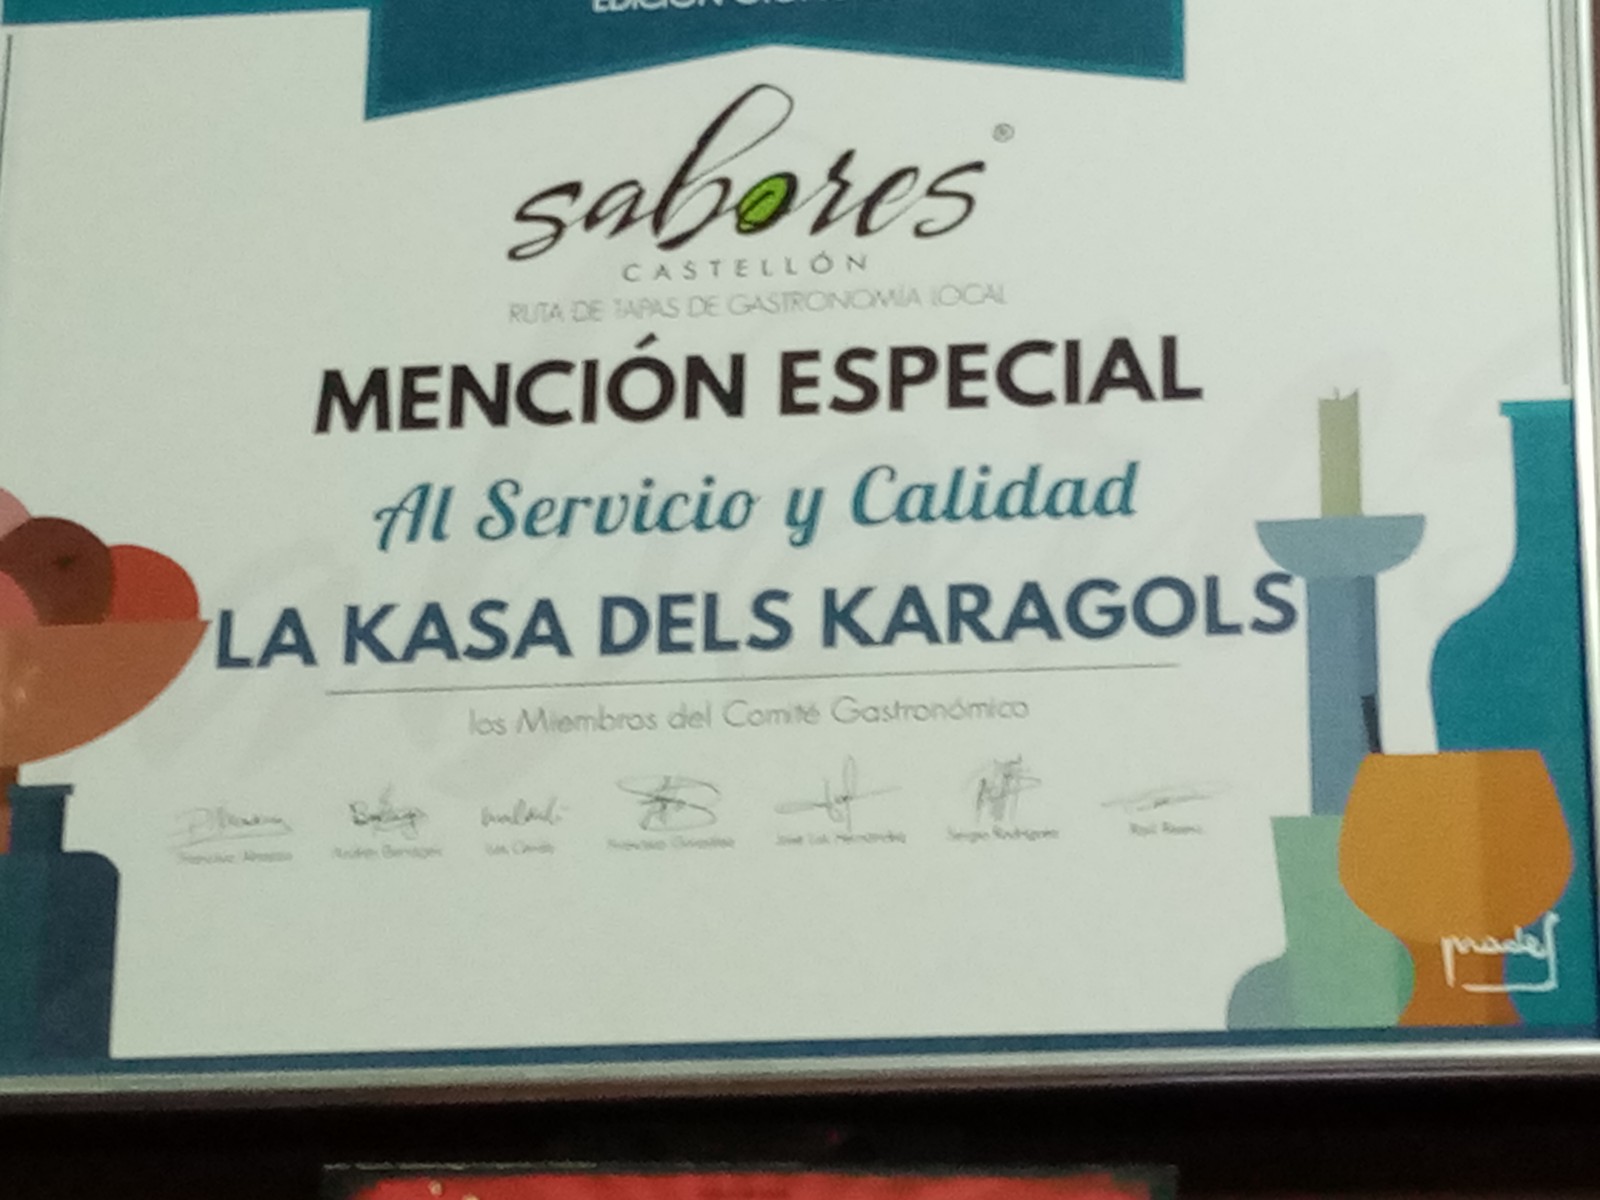 La Kasa dels Karagols, mención especial «Al sevicio y calidad» de la Ruta de Tapas de Gastronomía Local